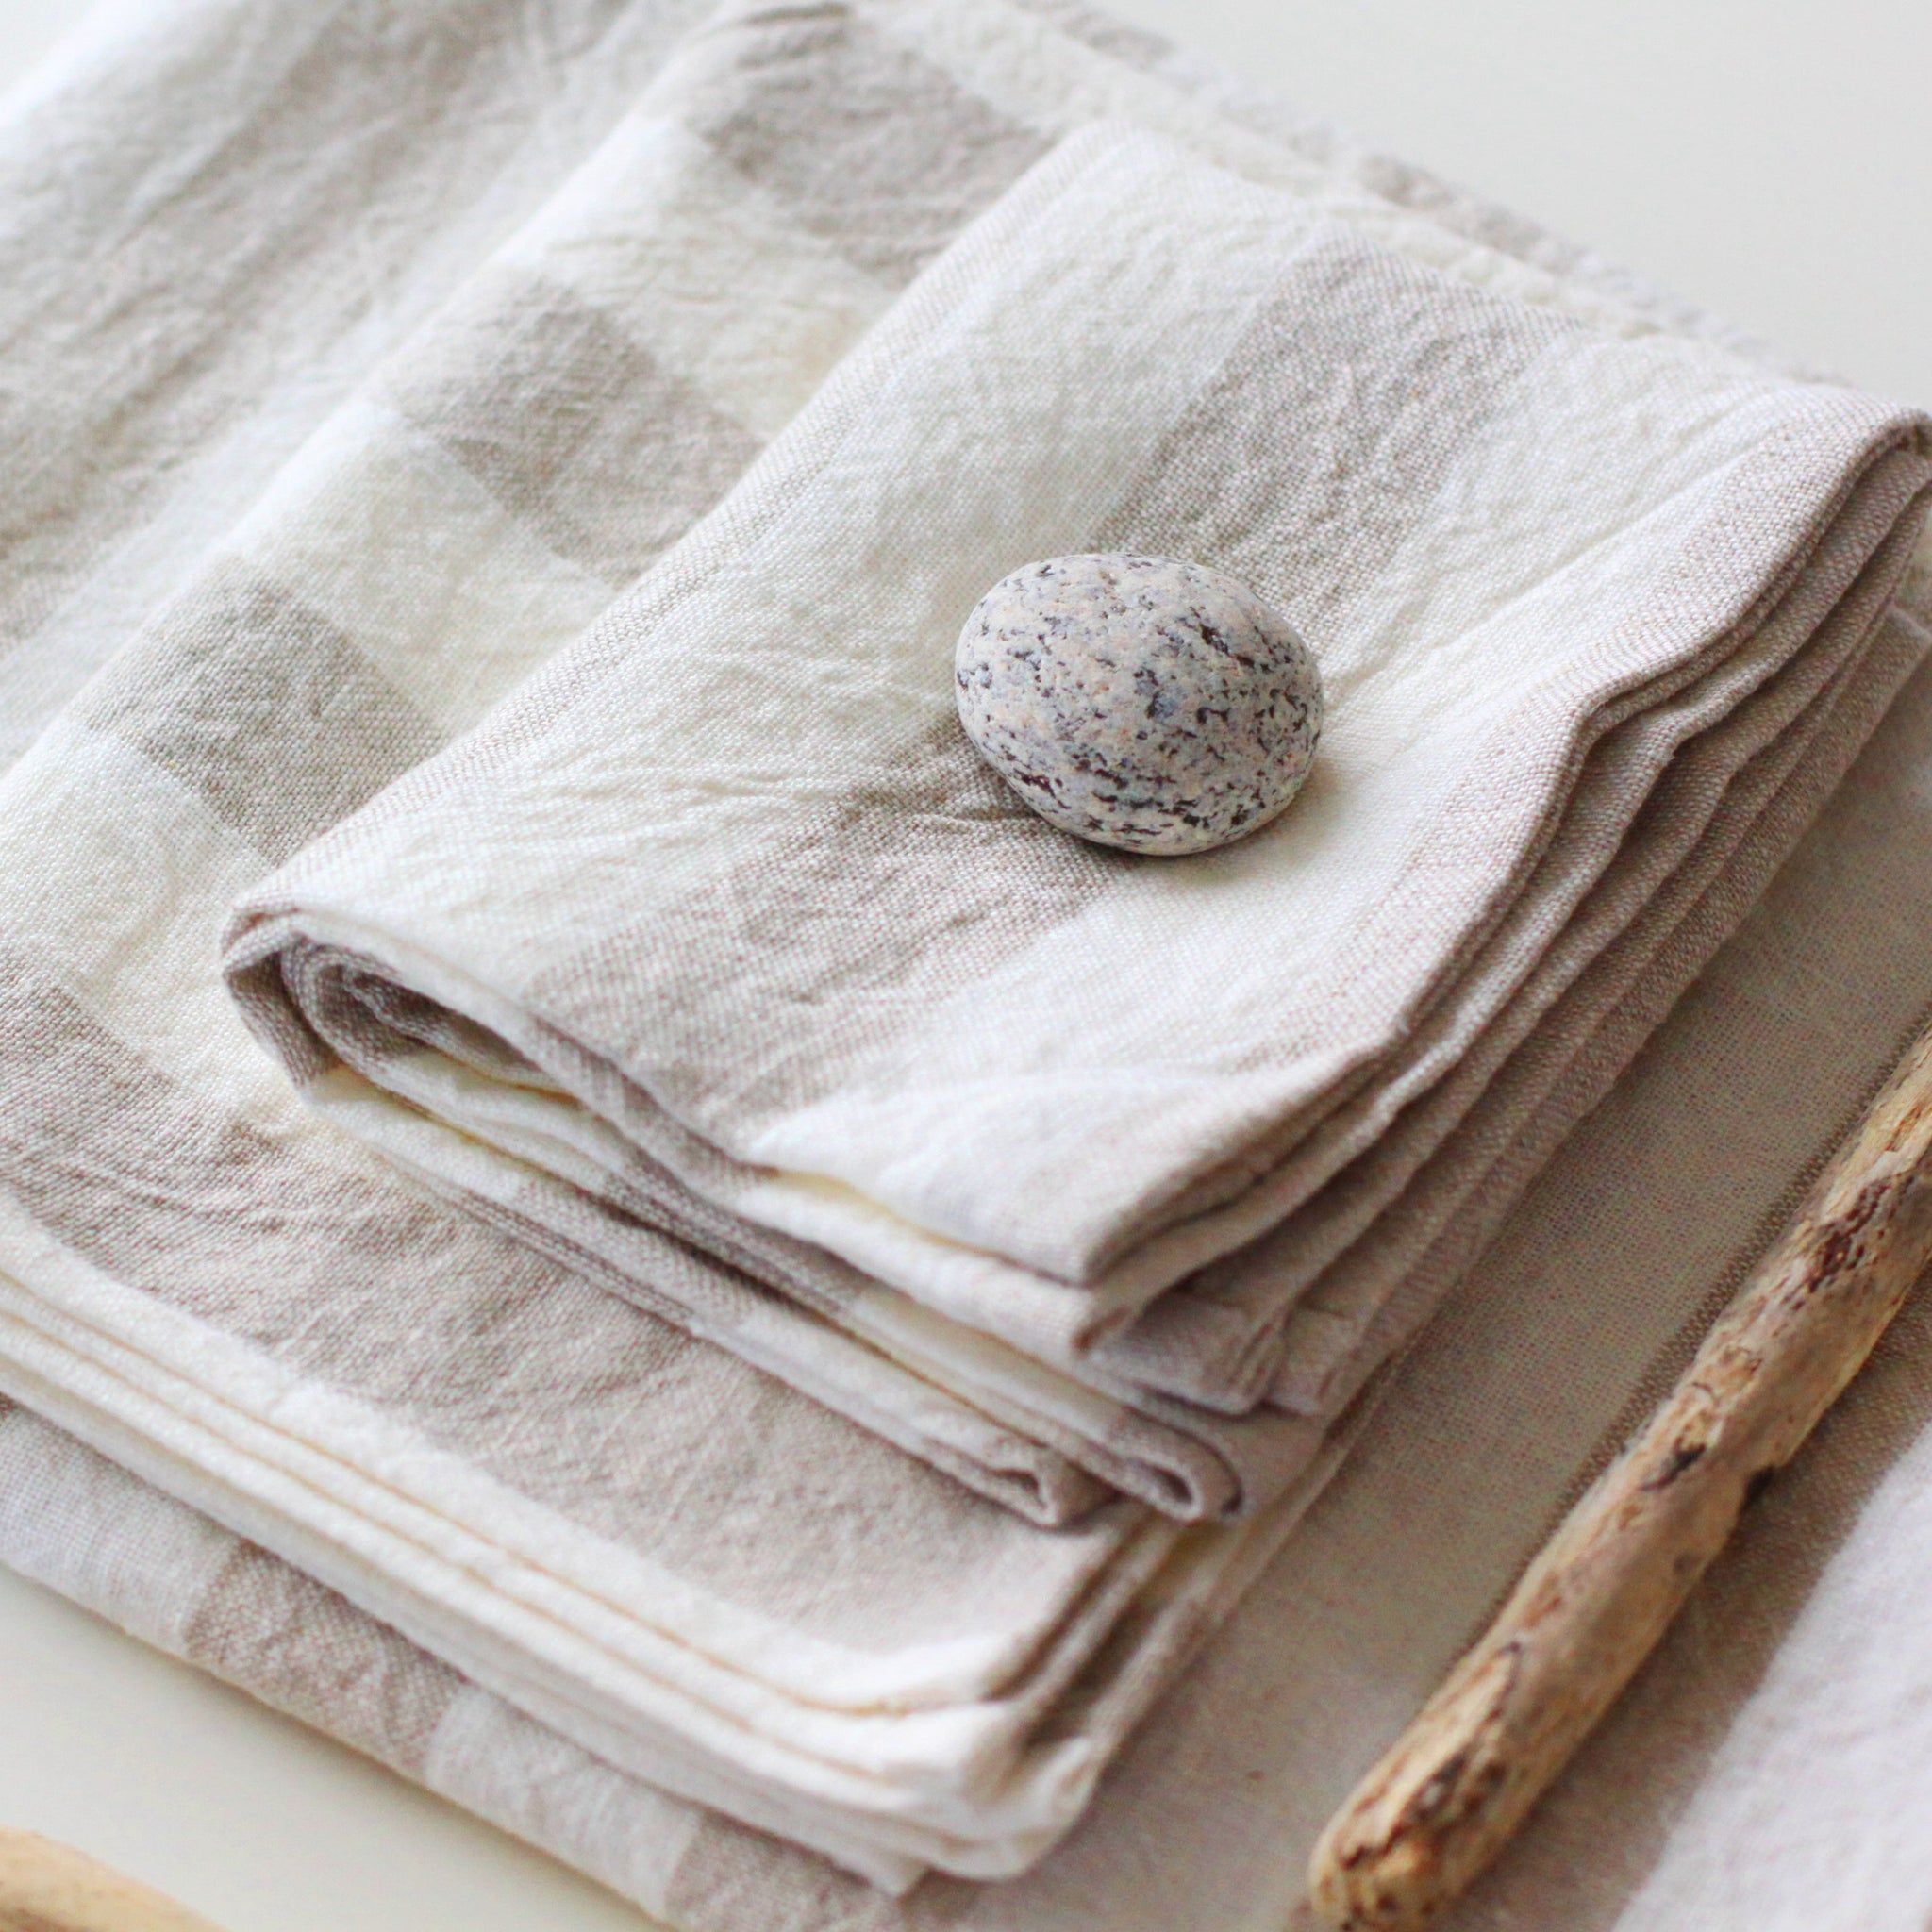 White Linen Towels, Face Towels, Bath Towels